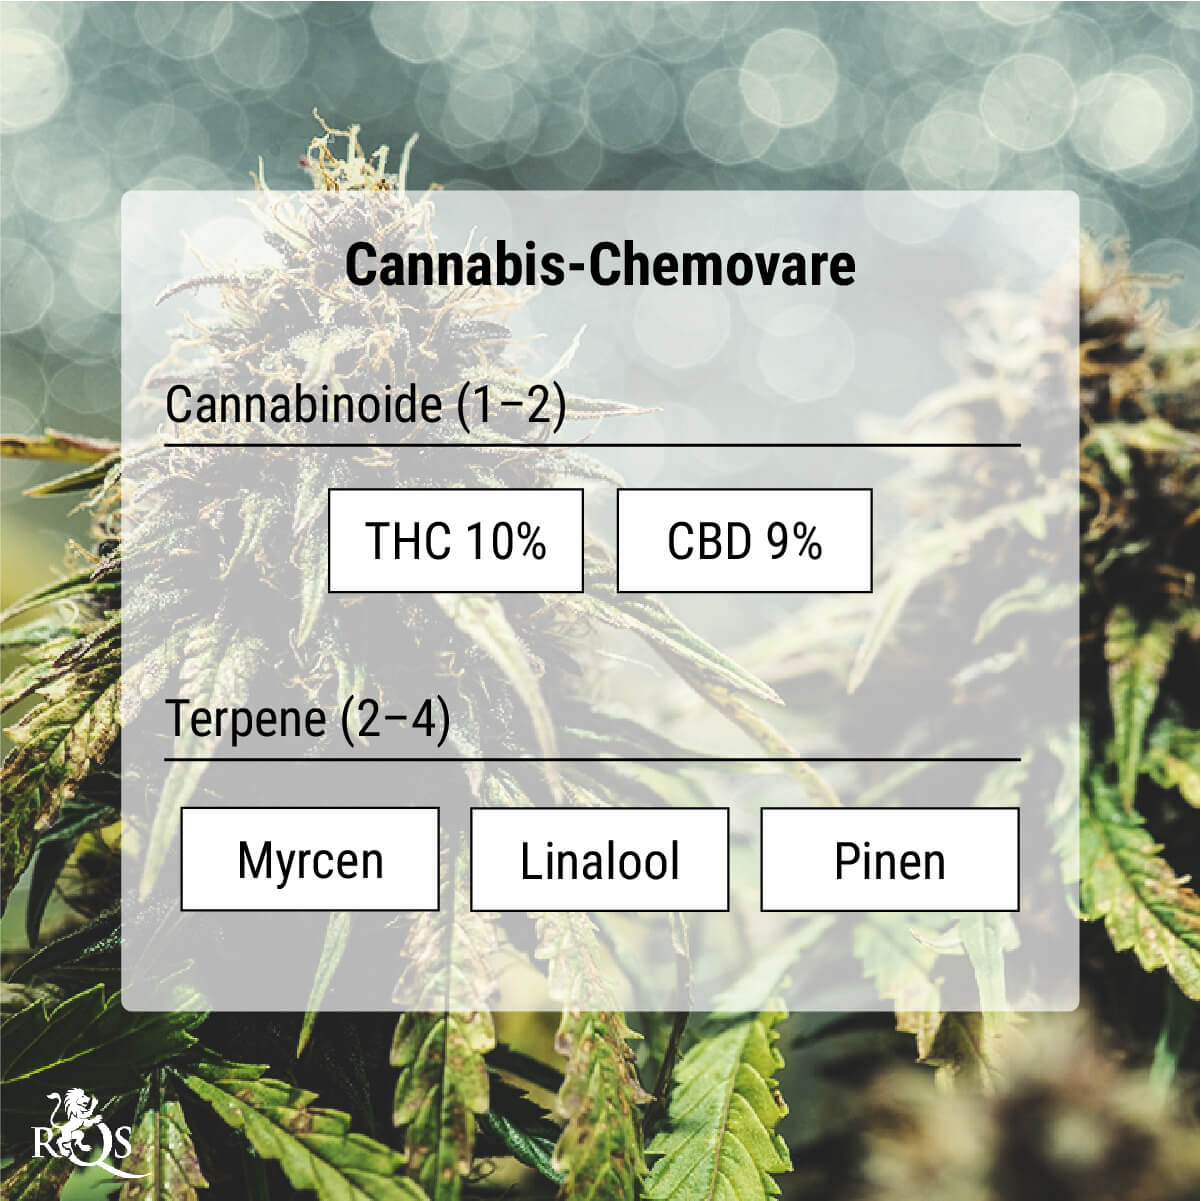 Cannabis-Chemovare: Eine genauere Methode der Klassifizierung